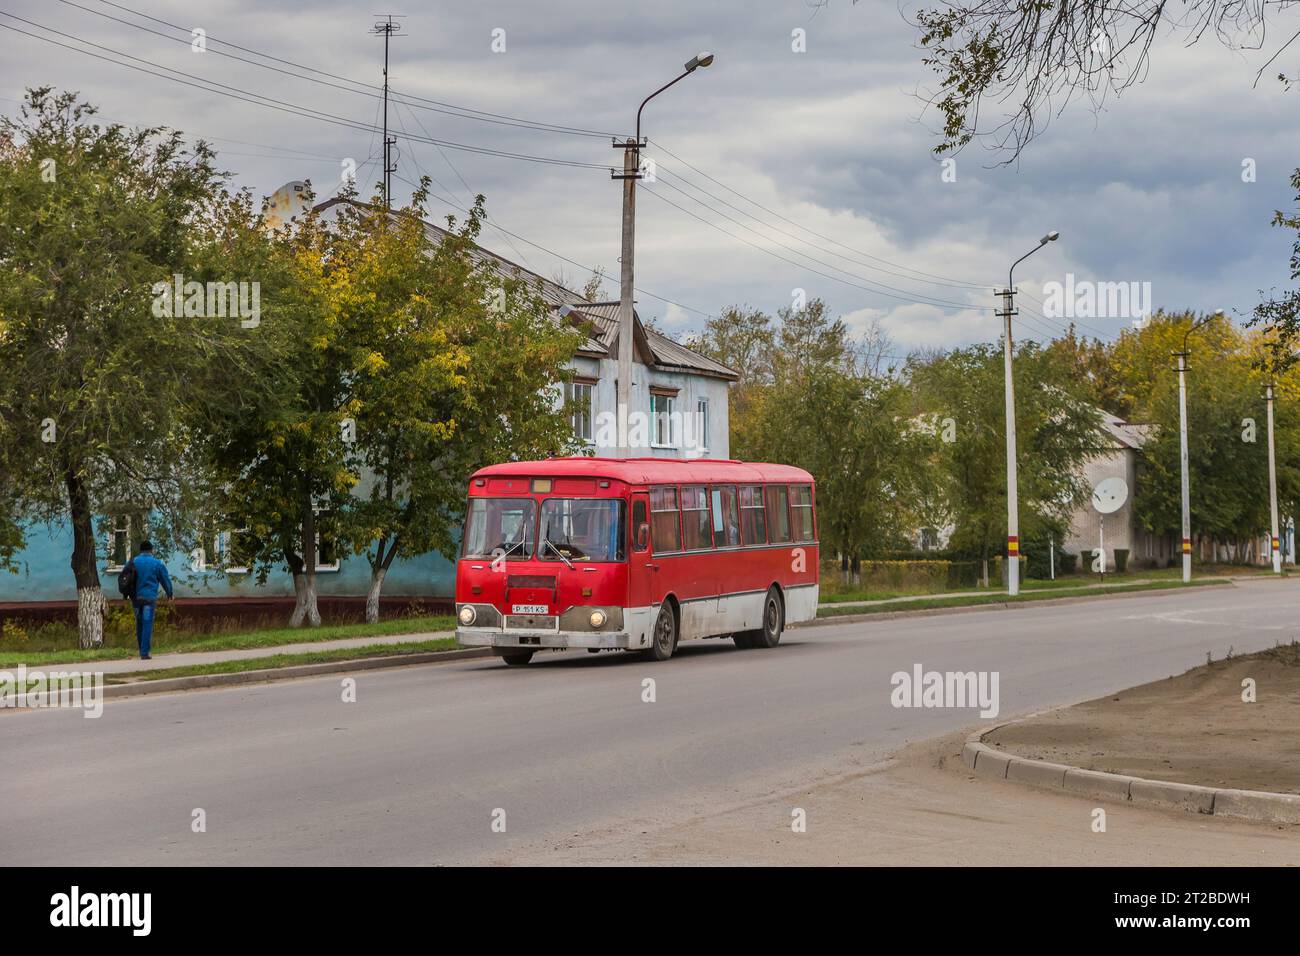 26.09.2019. Kazakhstan, Rudny. Liaz-677 Robun on urban route. Stock Photo